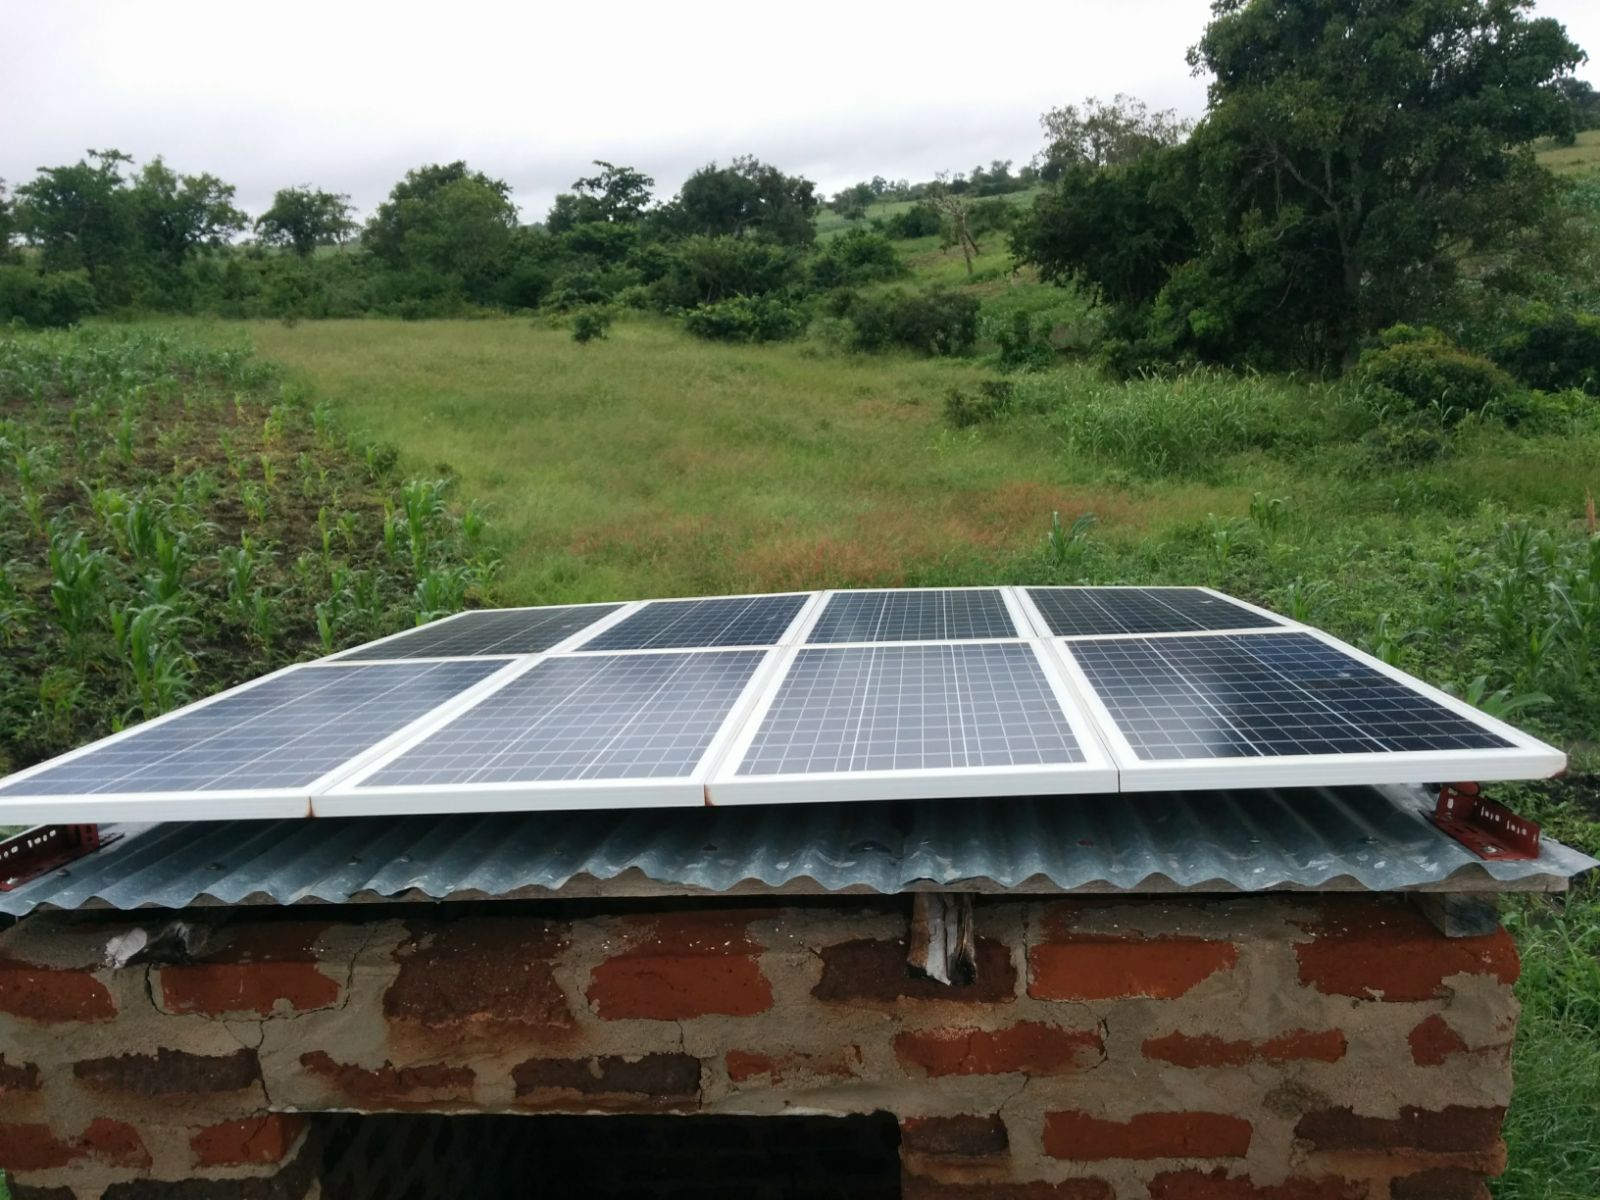 2016 – Acquisto pannelli fotovoltaici per alimentare la pompa del pozzo